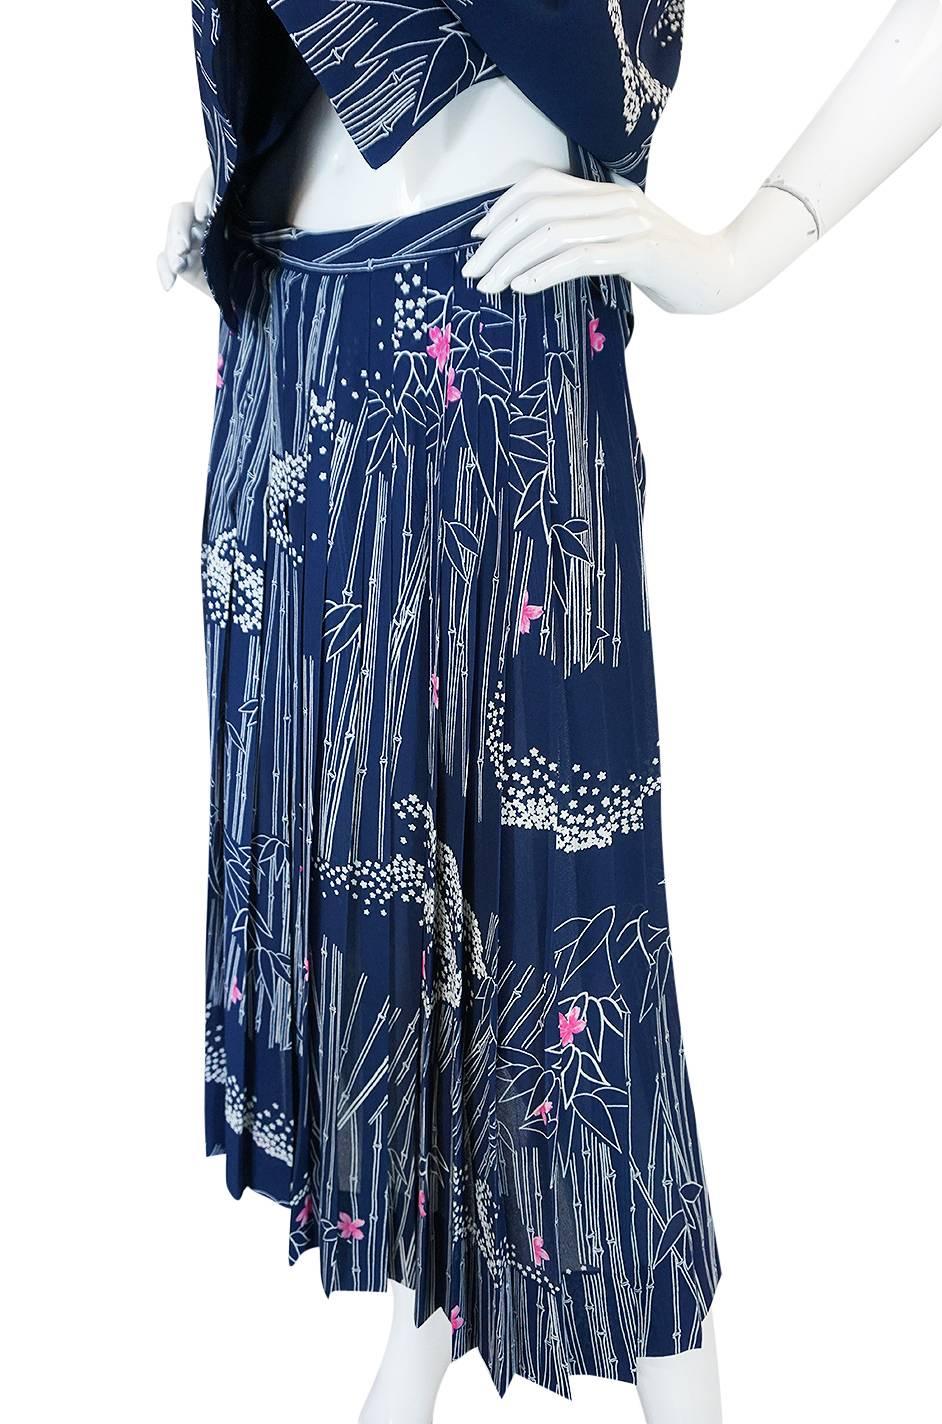 1970s Hanae Mori Slk Bamboo & Flower Print Skirt & Top 2